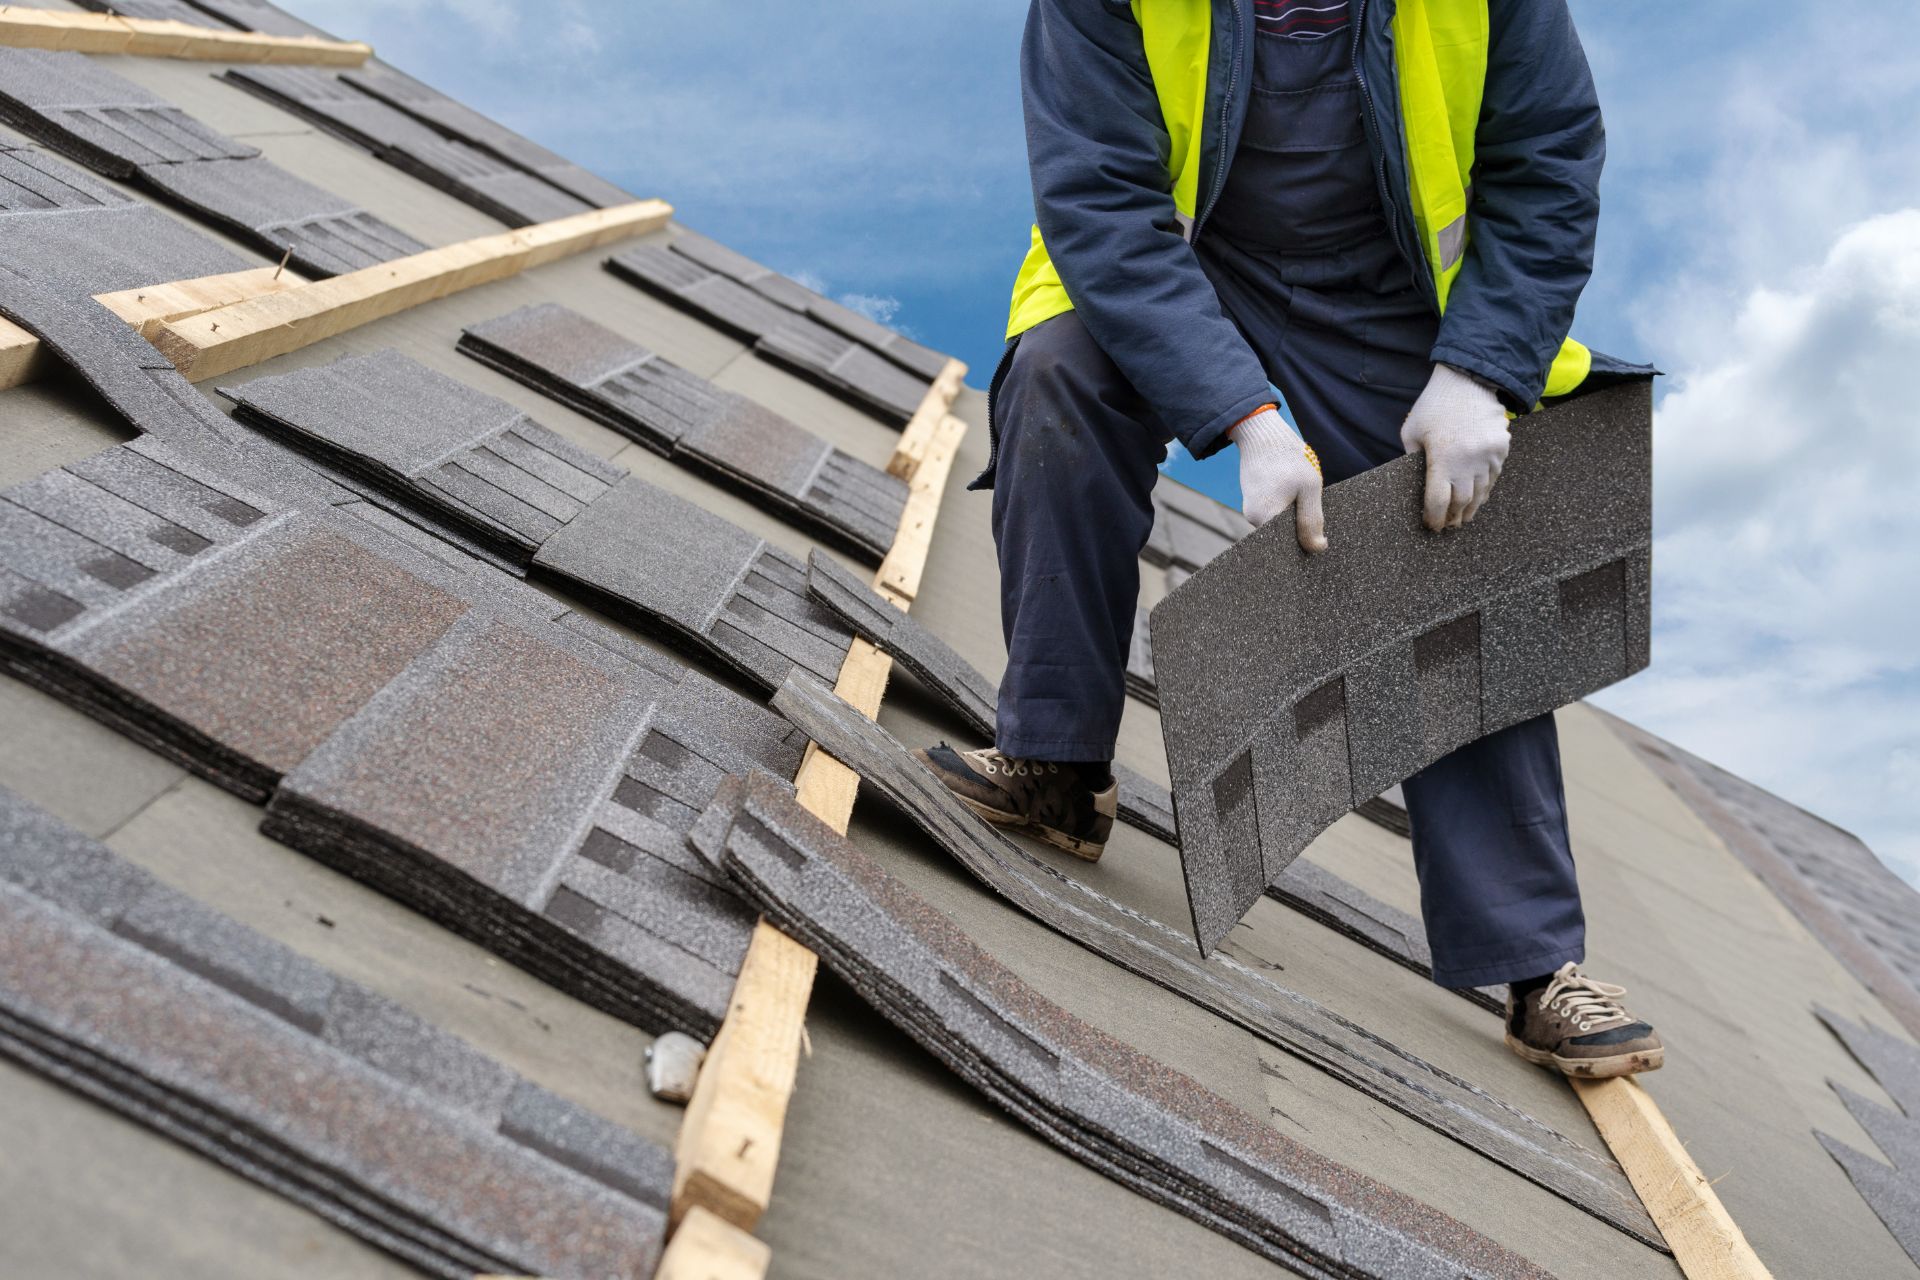 Worker preparing asphalt roof tiles